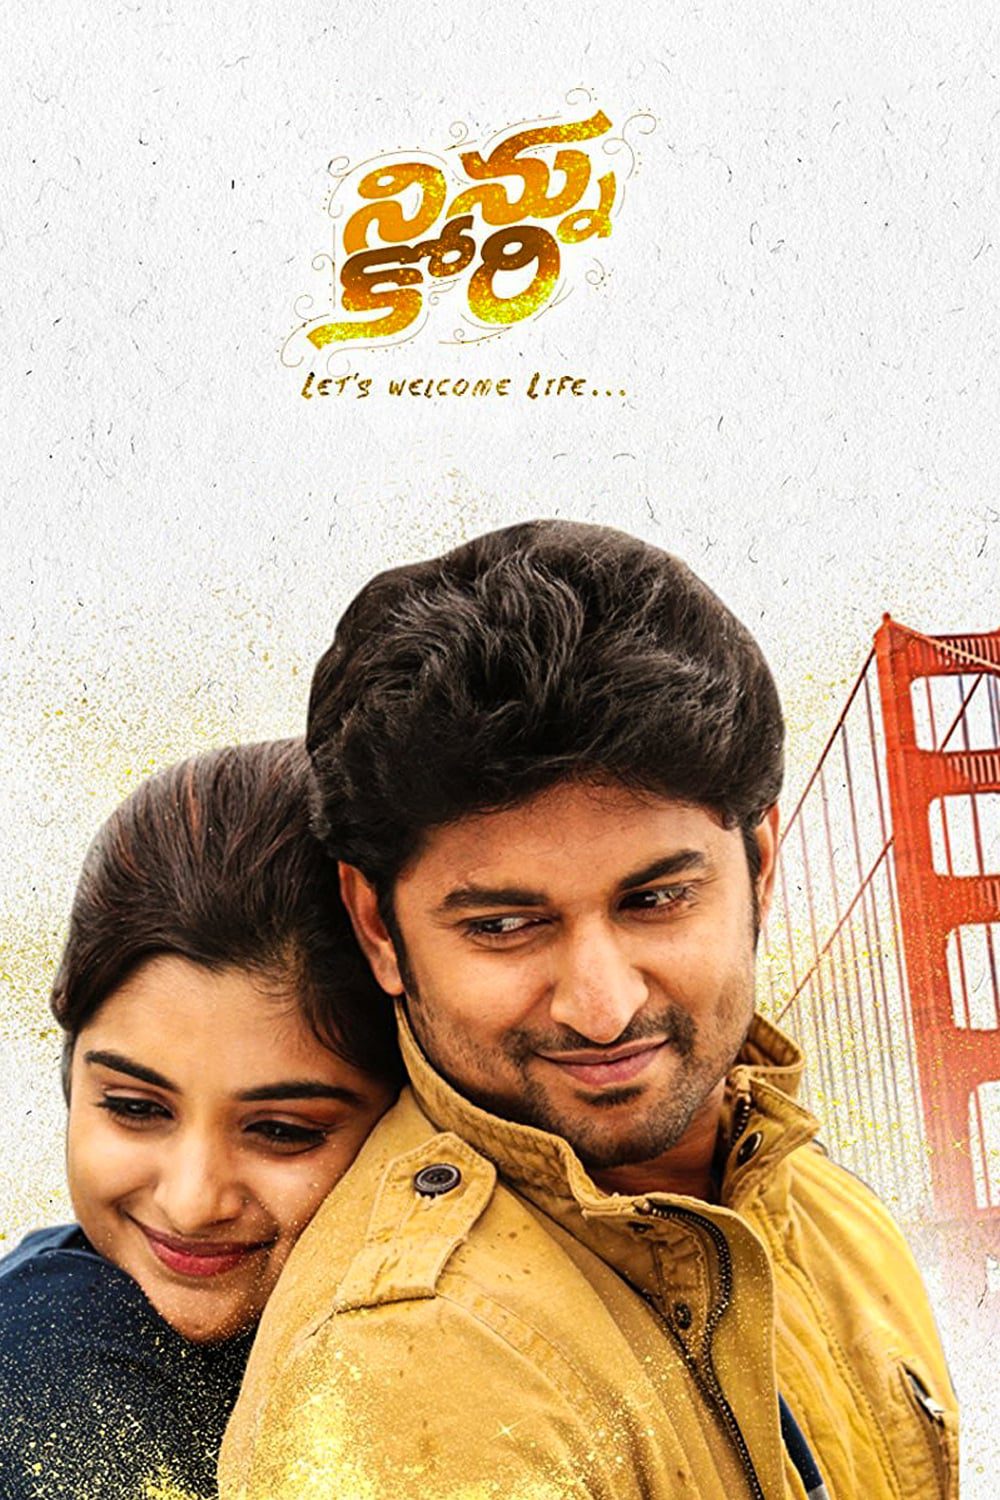 Poster for the movie "Ninnu Kori"